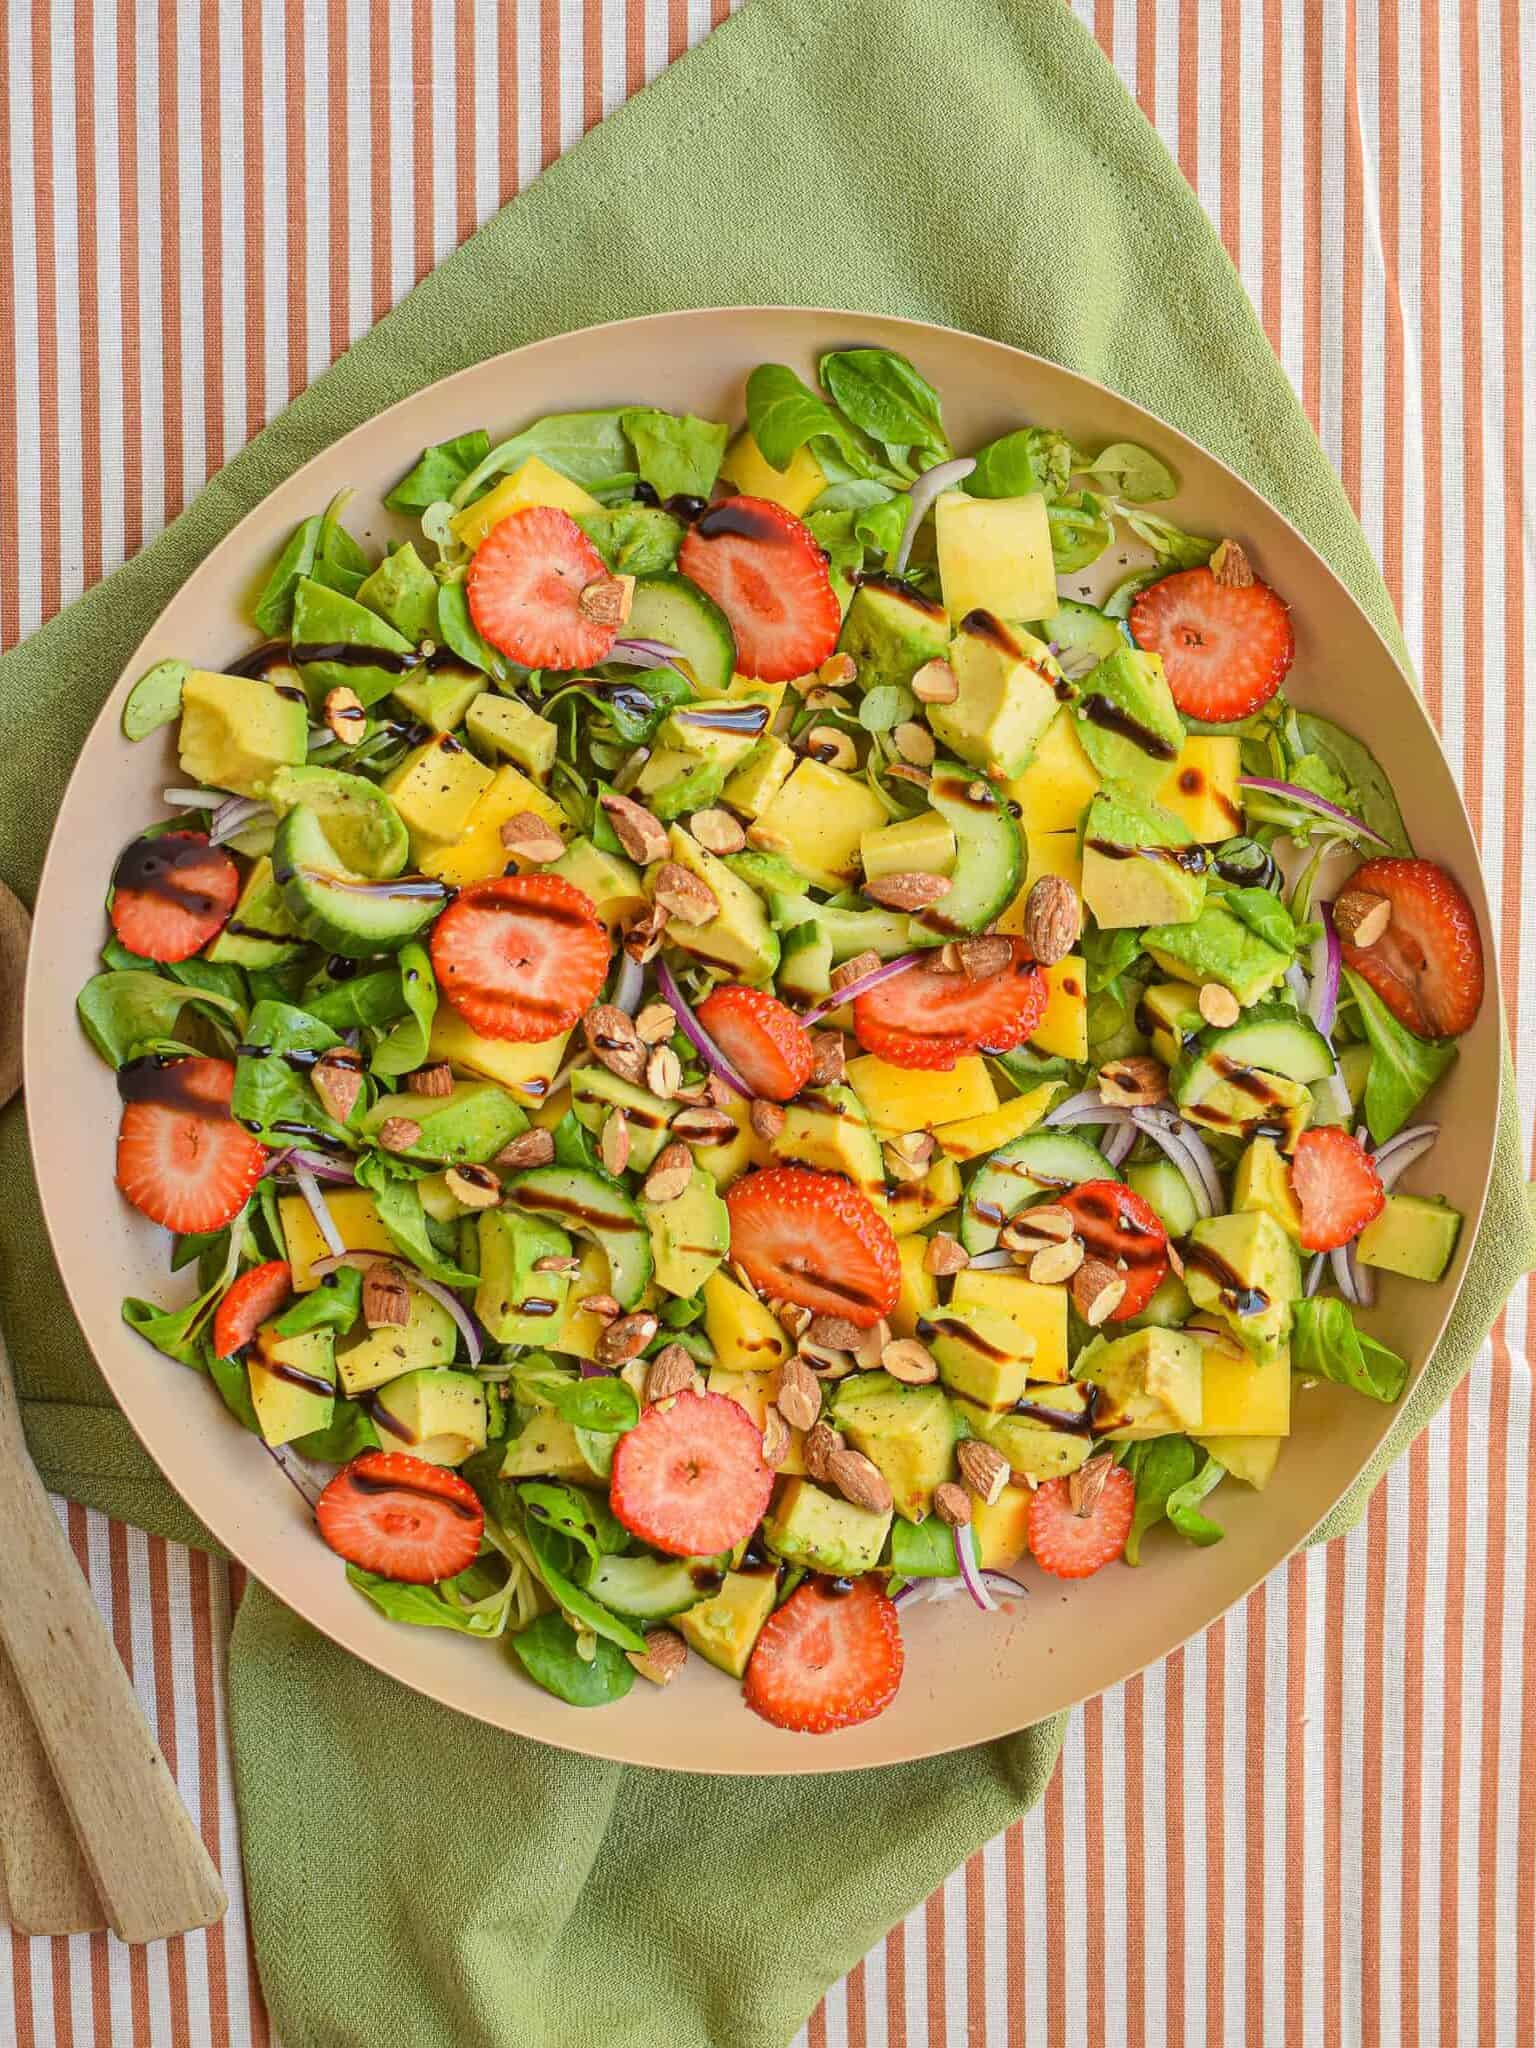 Farverig salat med jordbær, mango og avocado